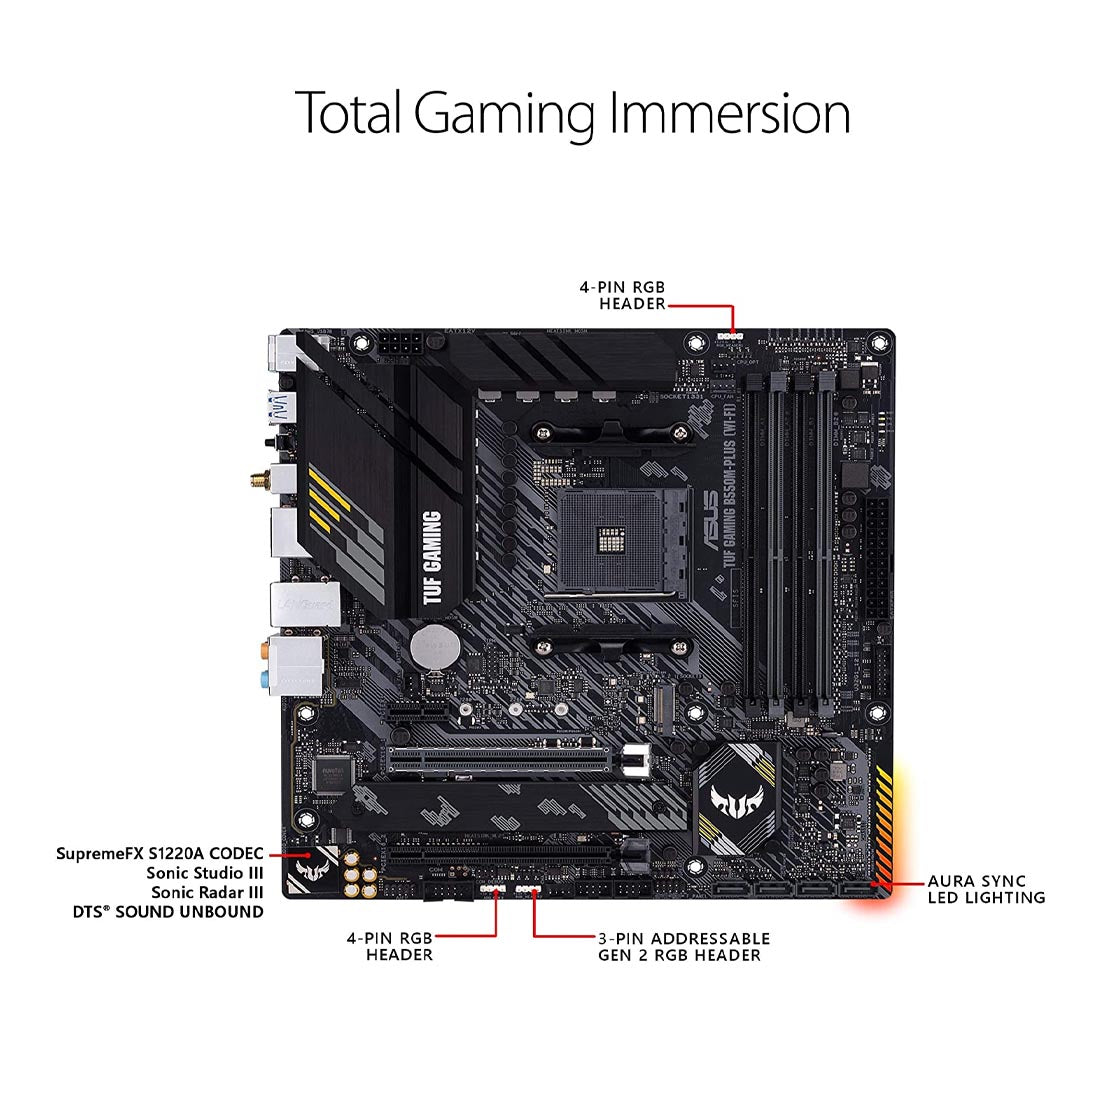 Asus B550 TUF गेमिंग B550M-Plus WiFi AMD AM4 mATX गेमिंग मदरबोर्ड PCIe 4.0 डुअल M.2 और ऑरा सिंक के साथ